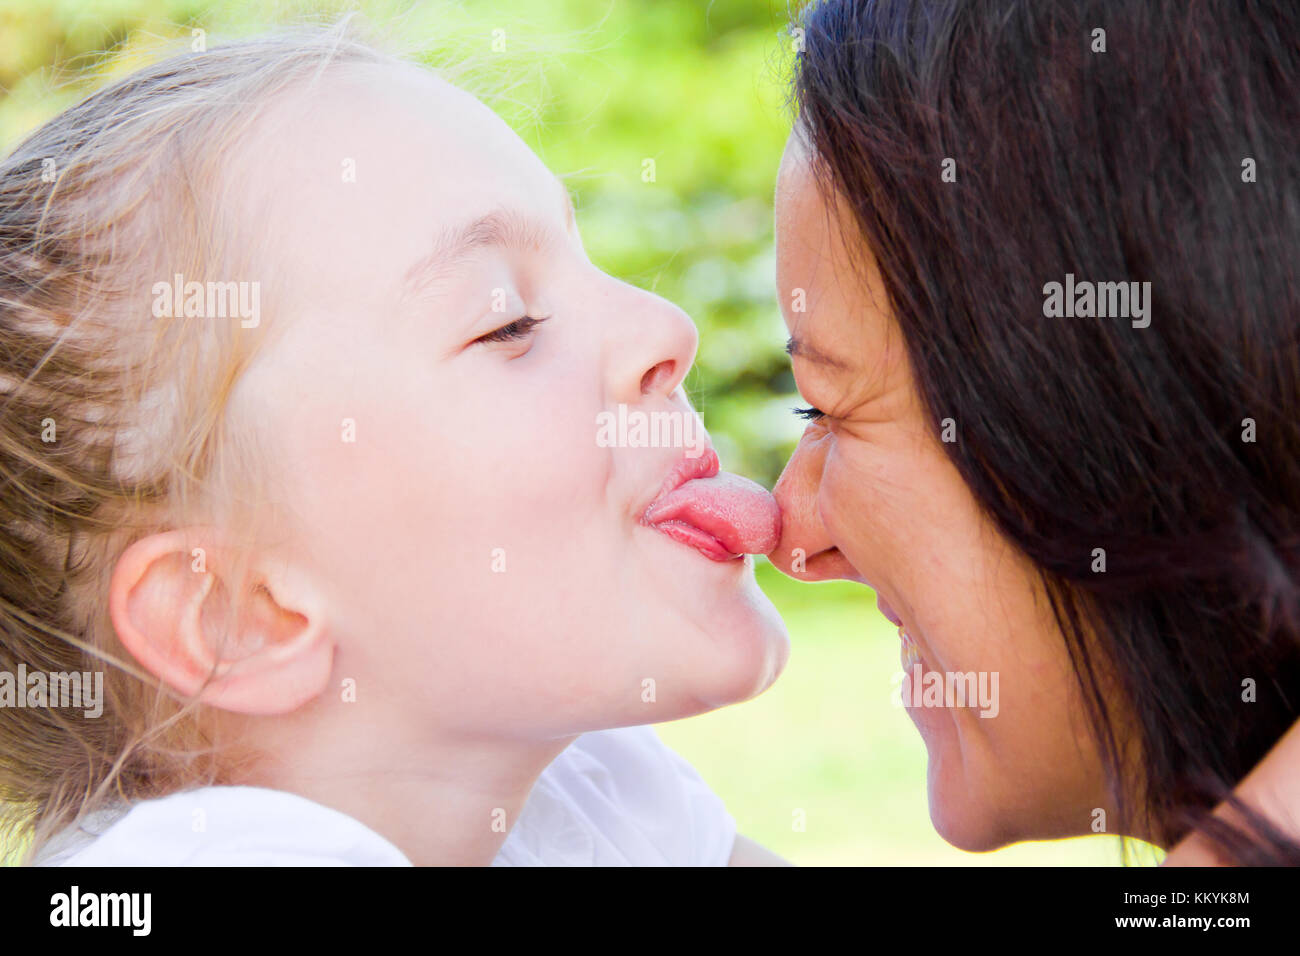 Лижут маме форум. Мать целует дочь. Мама и дочь поцелуй с языком. Поцелуй мамы и дочери в губы. Мама целует дочку в губы.